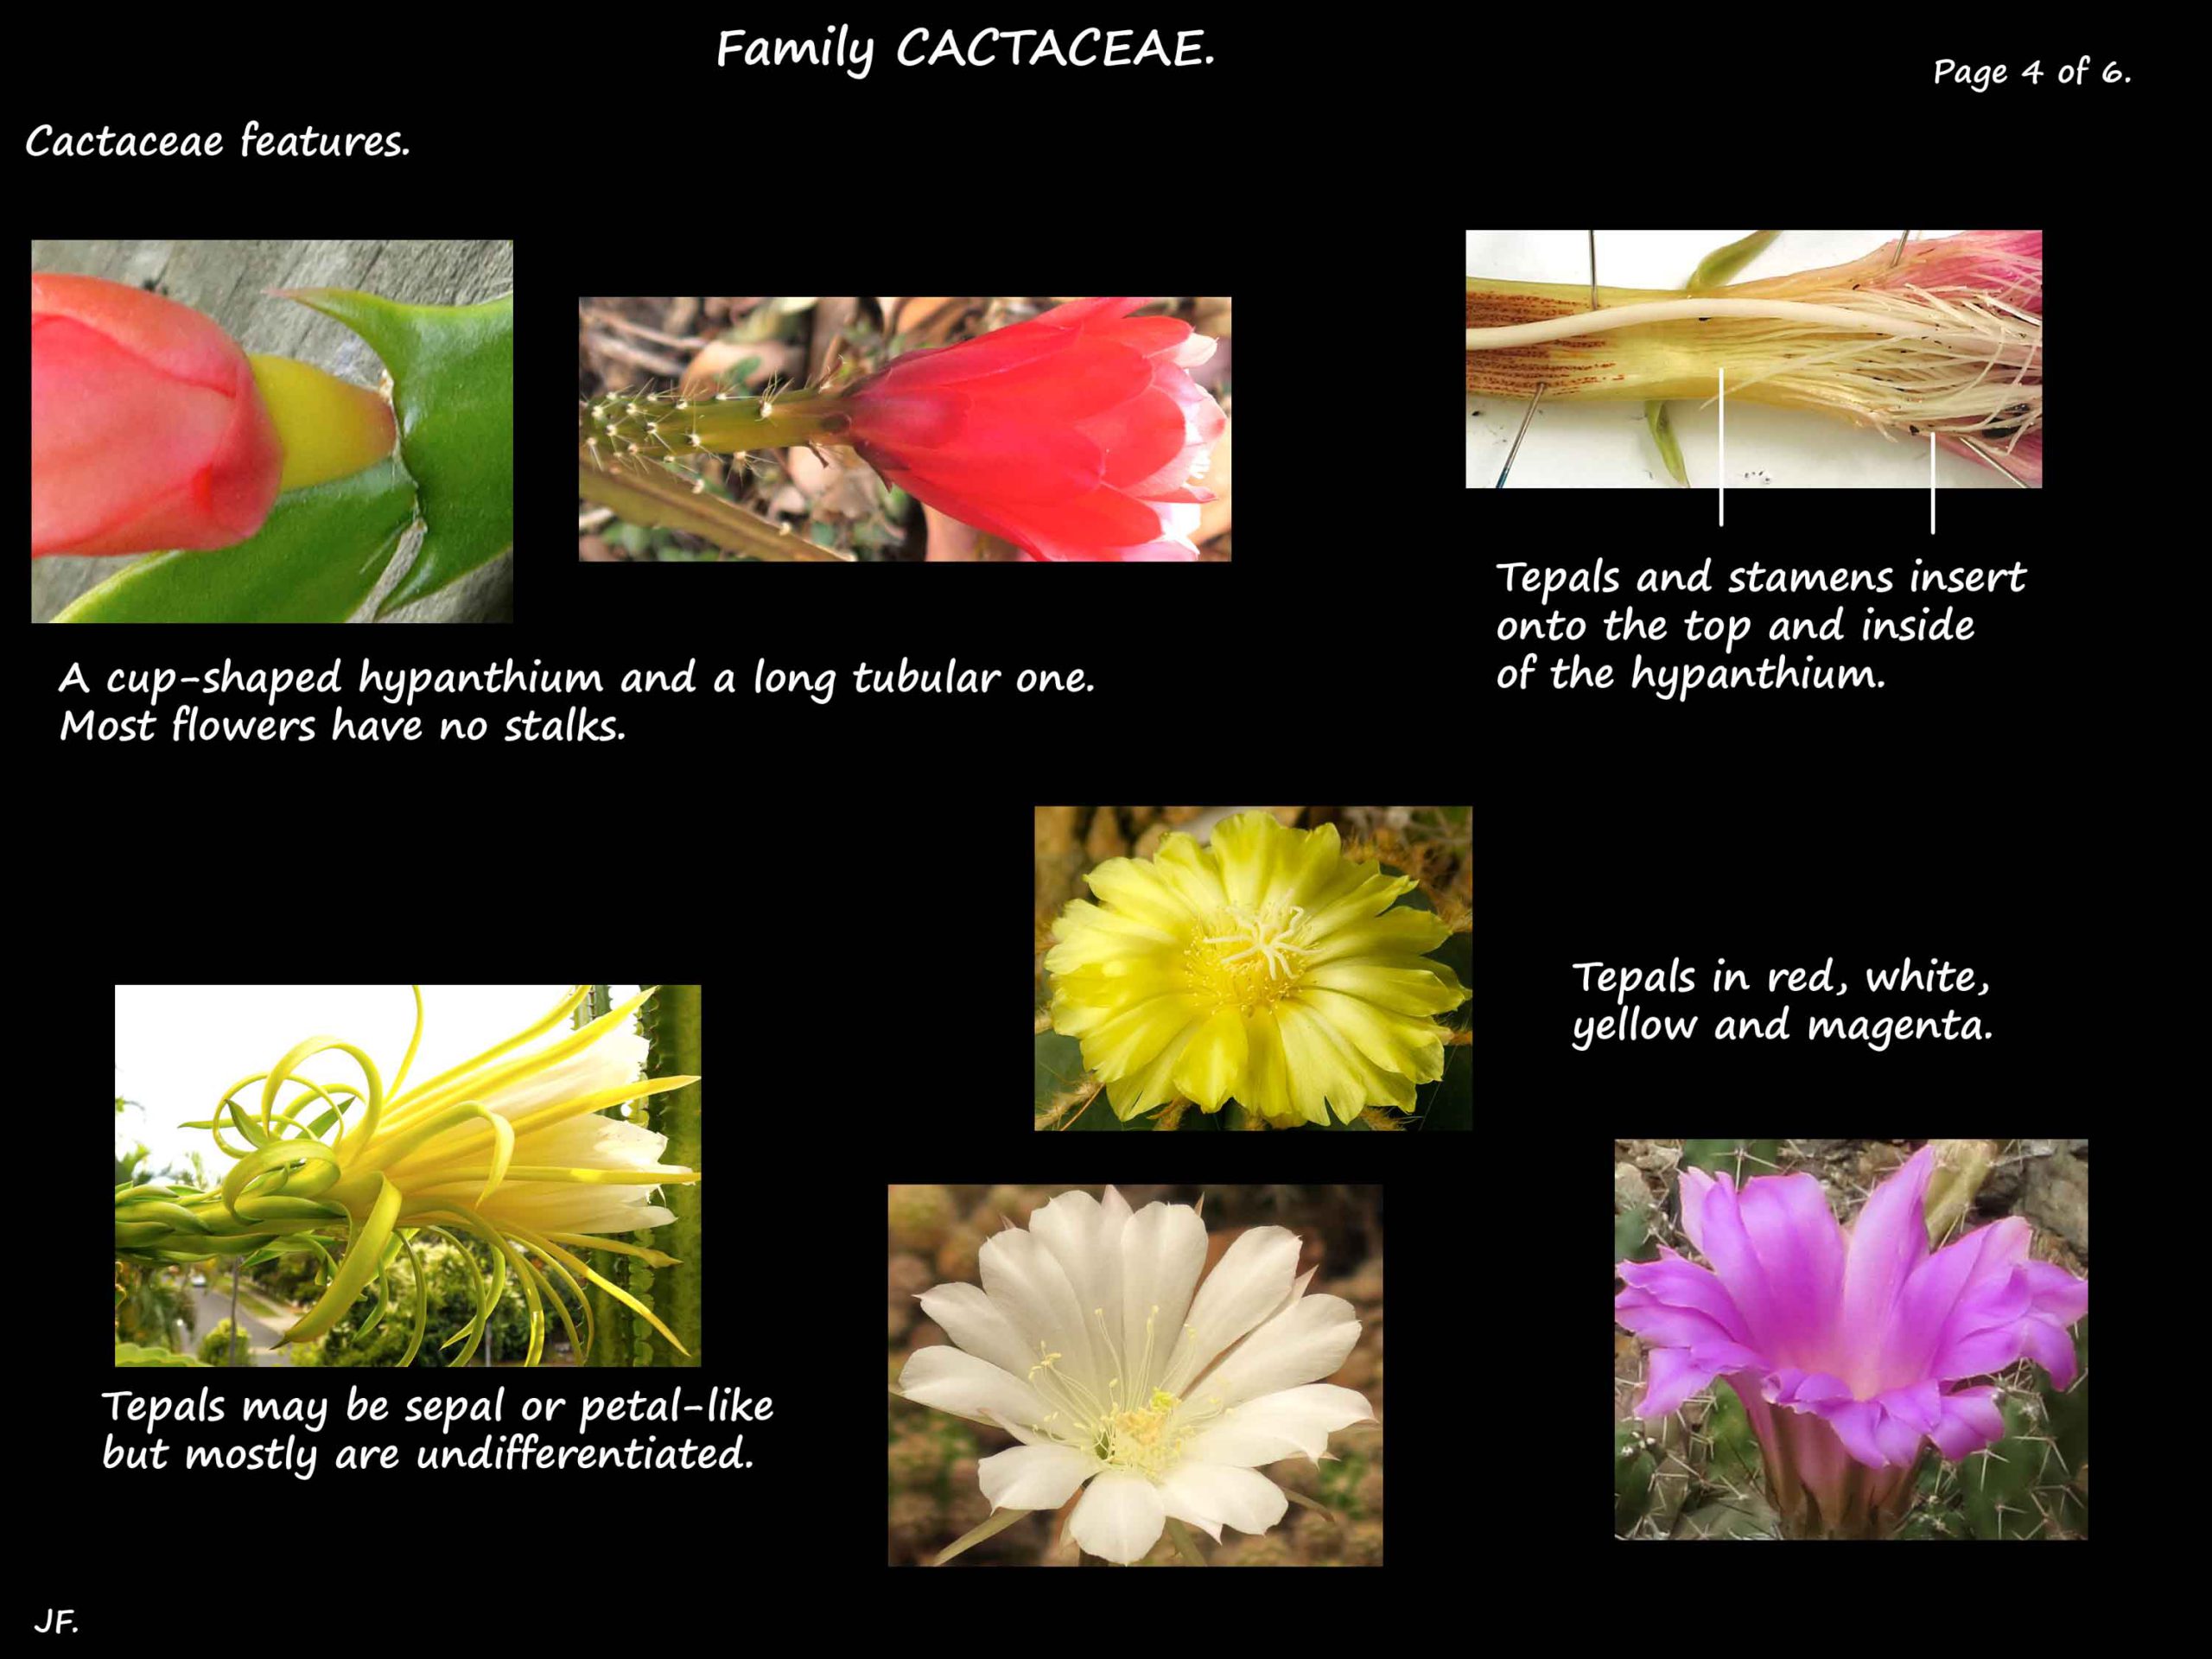 4 Cactaceae flowers